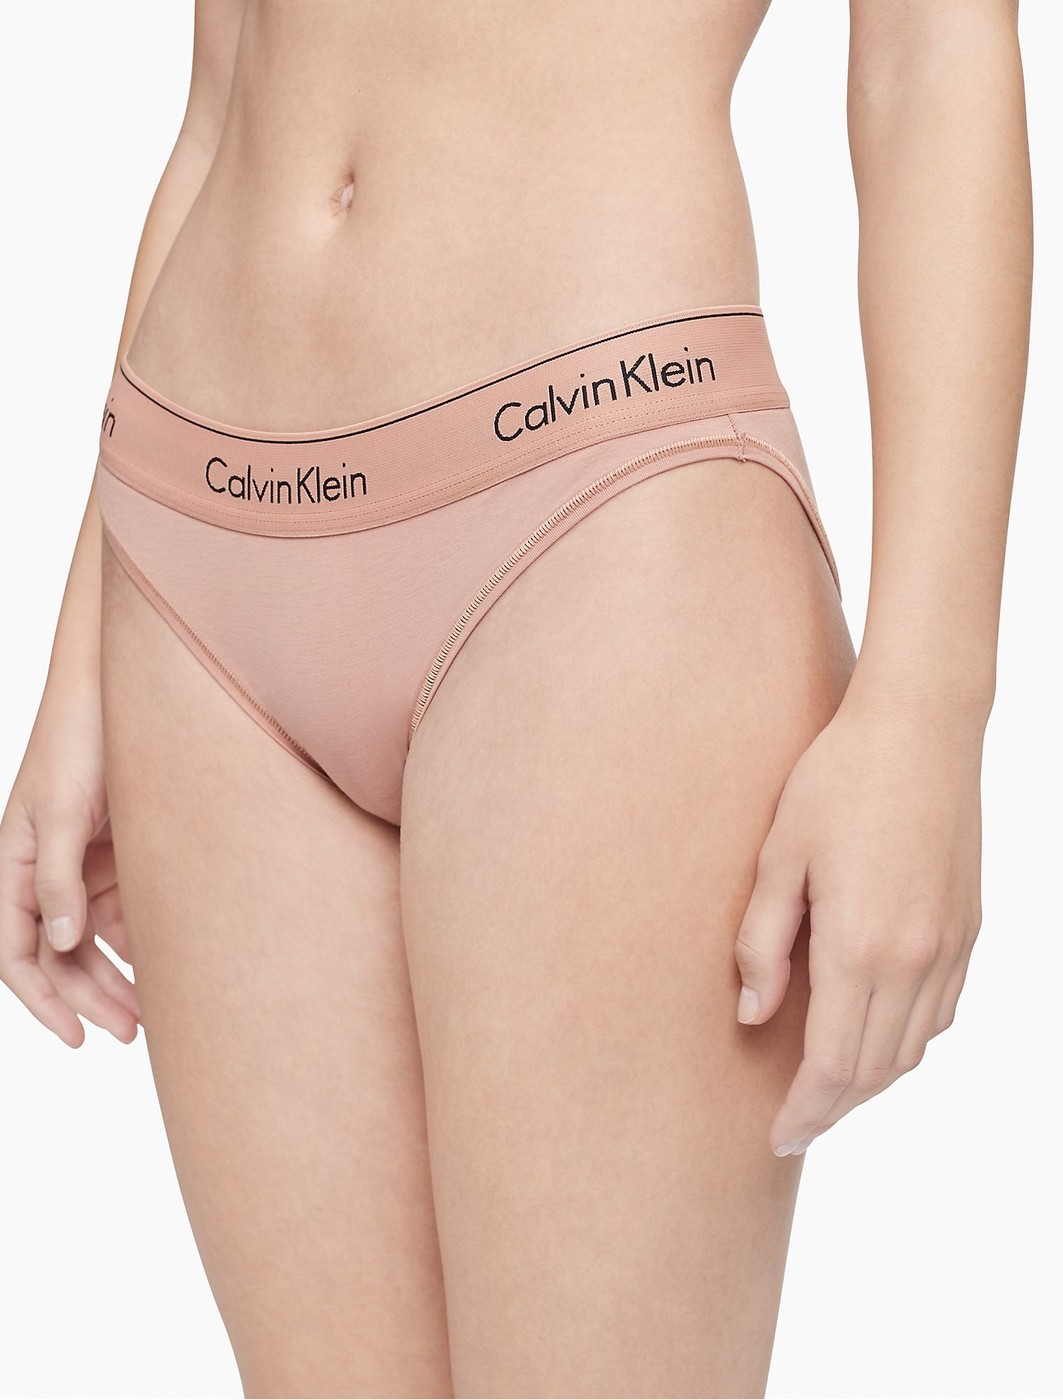 Трусики - женские трусы Calvin Klein